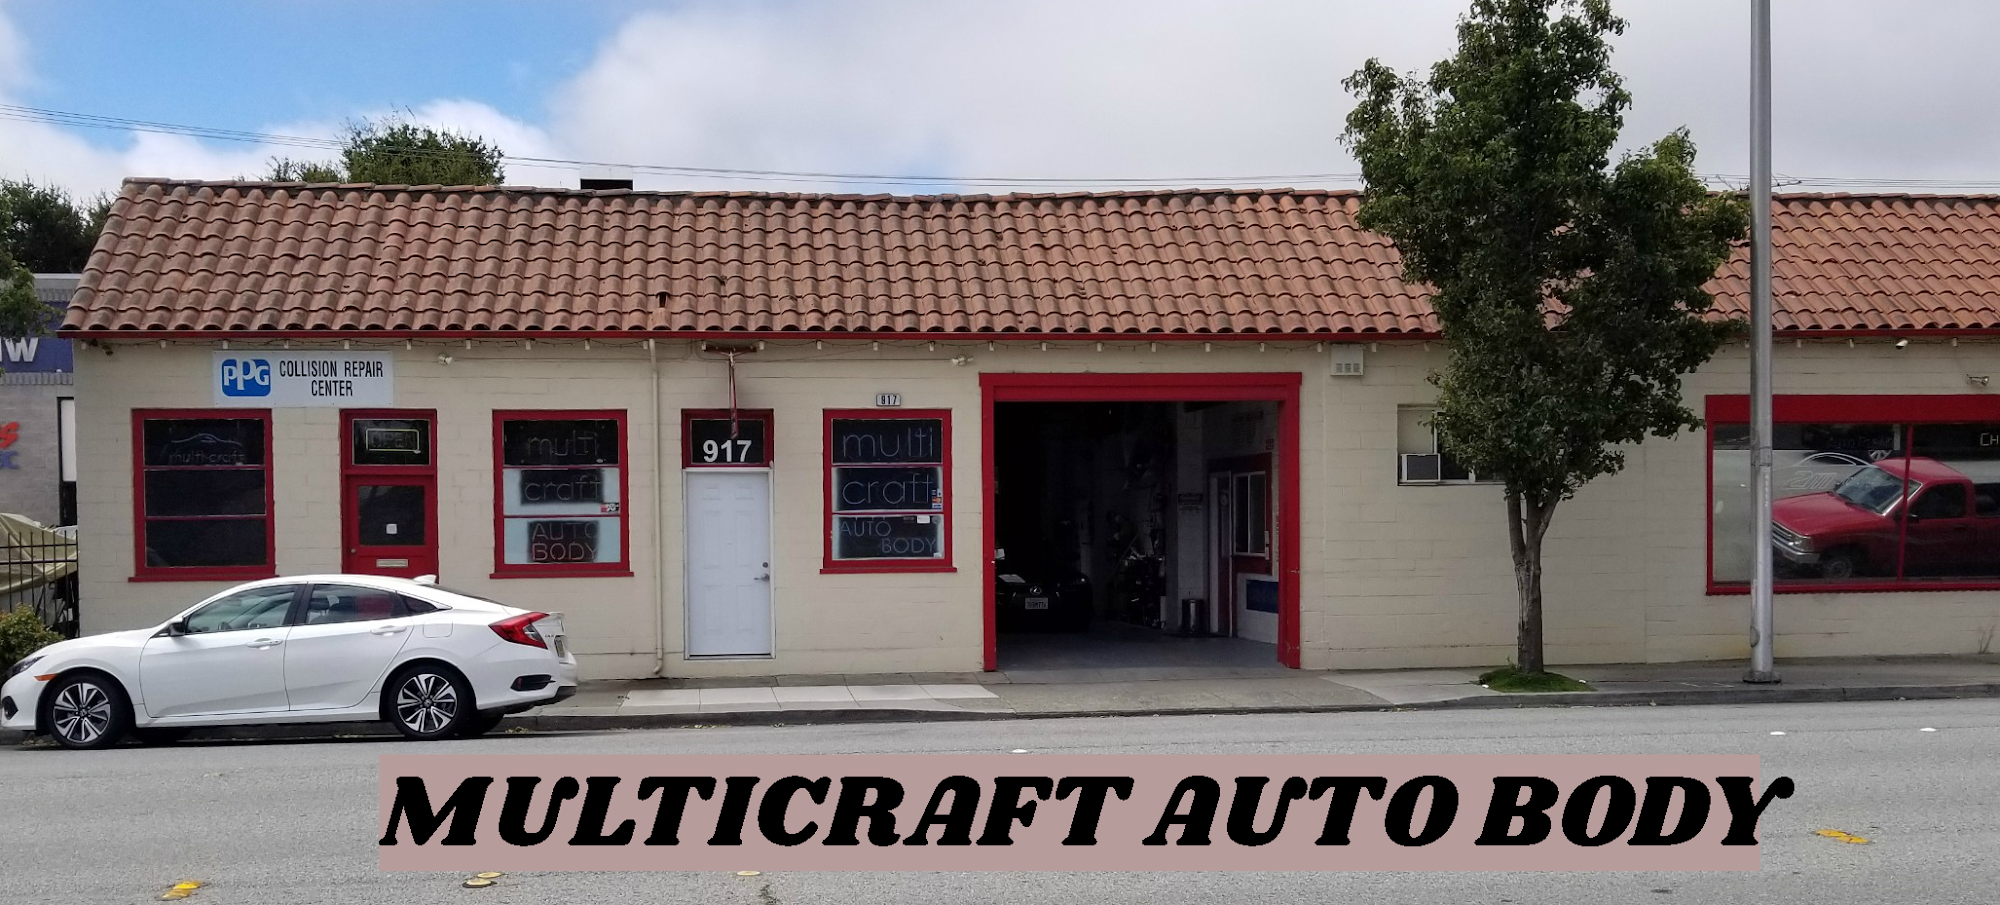 Multi-Craft Auto Body Shop